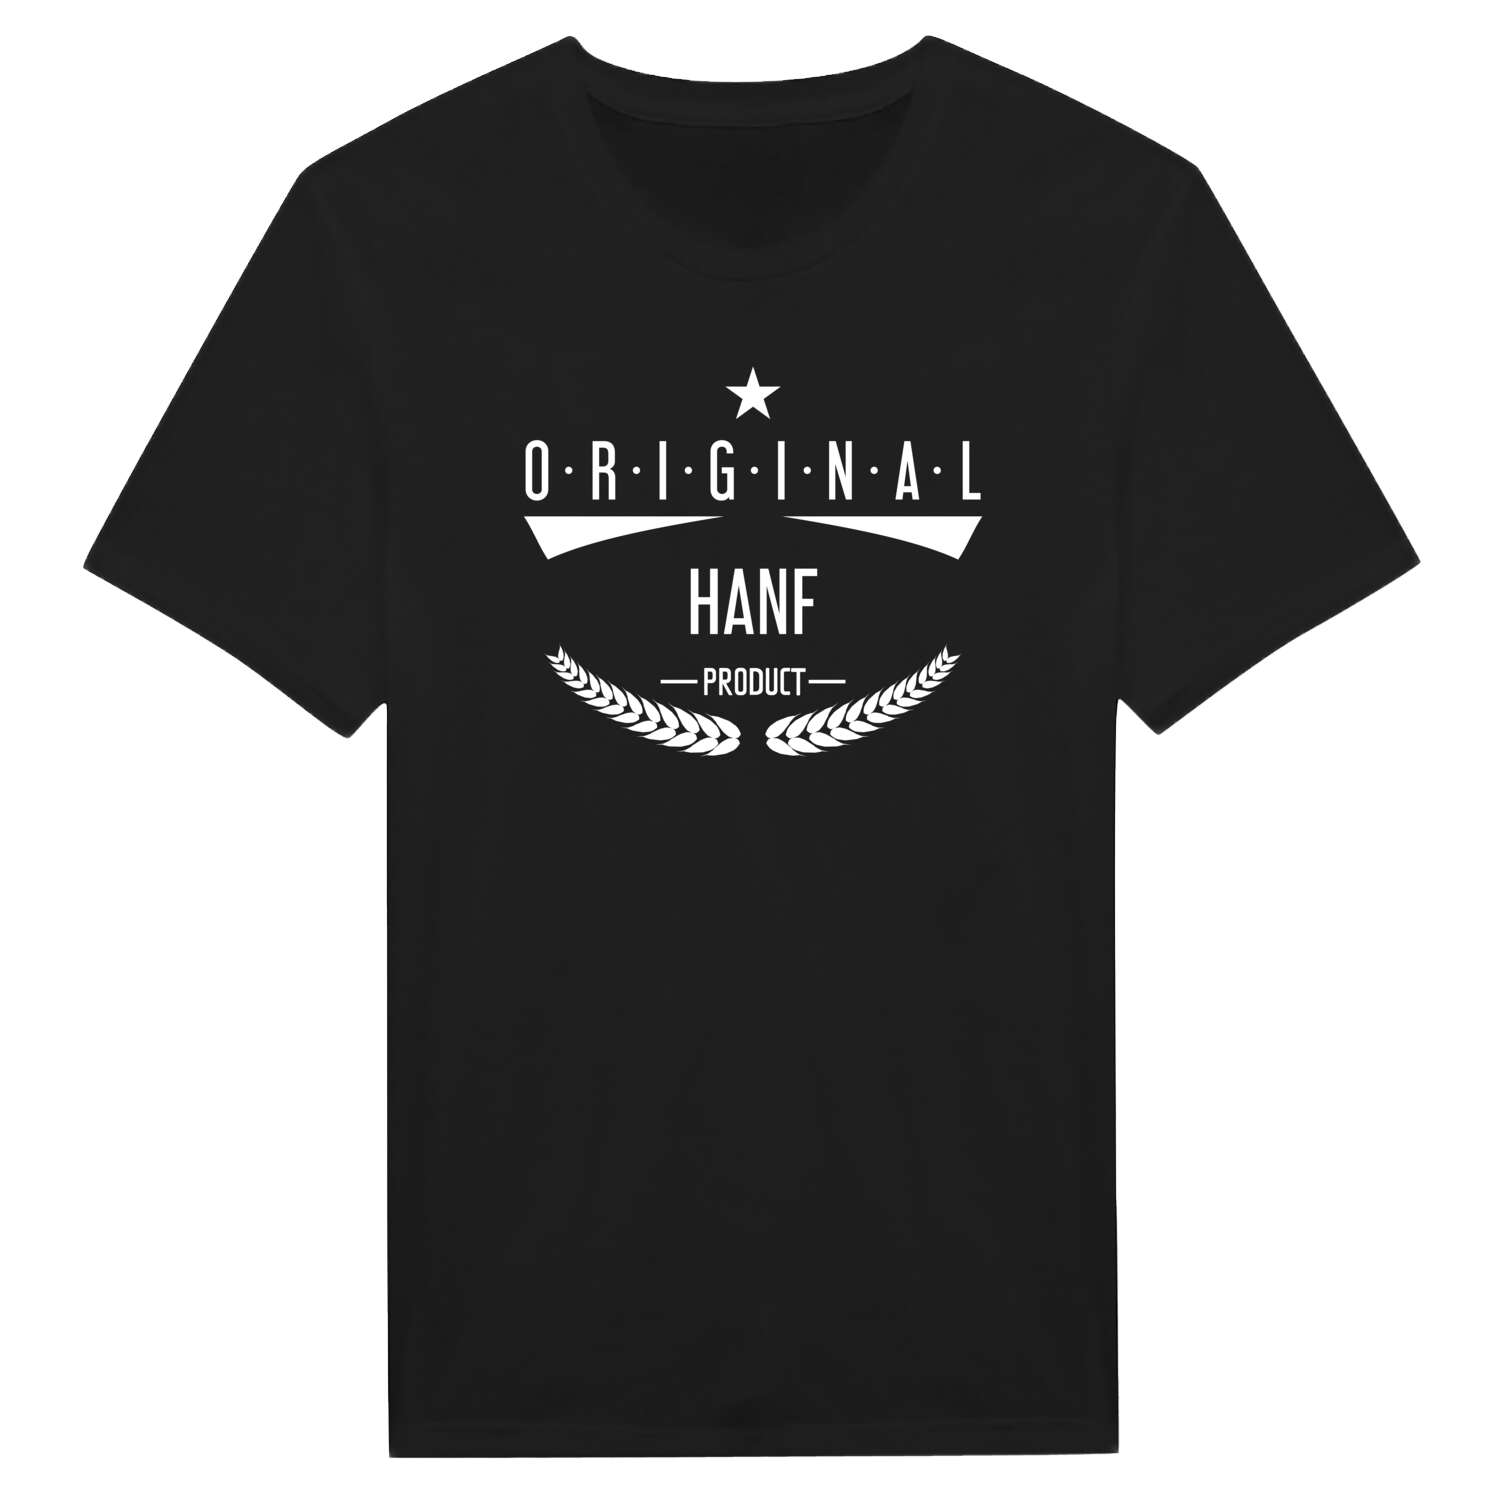 Hanf T-Shirt »Original Product«